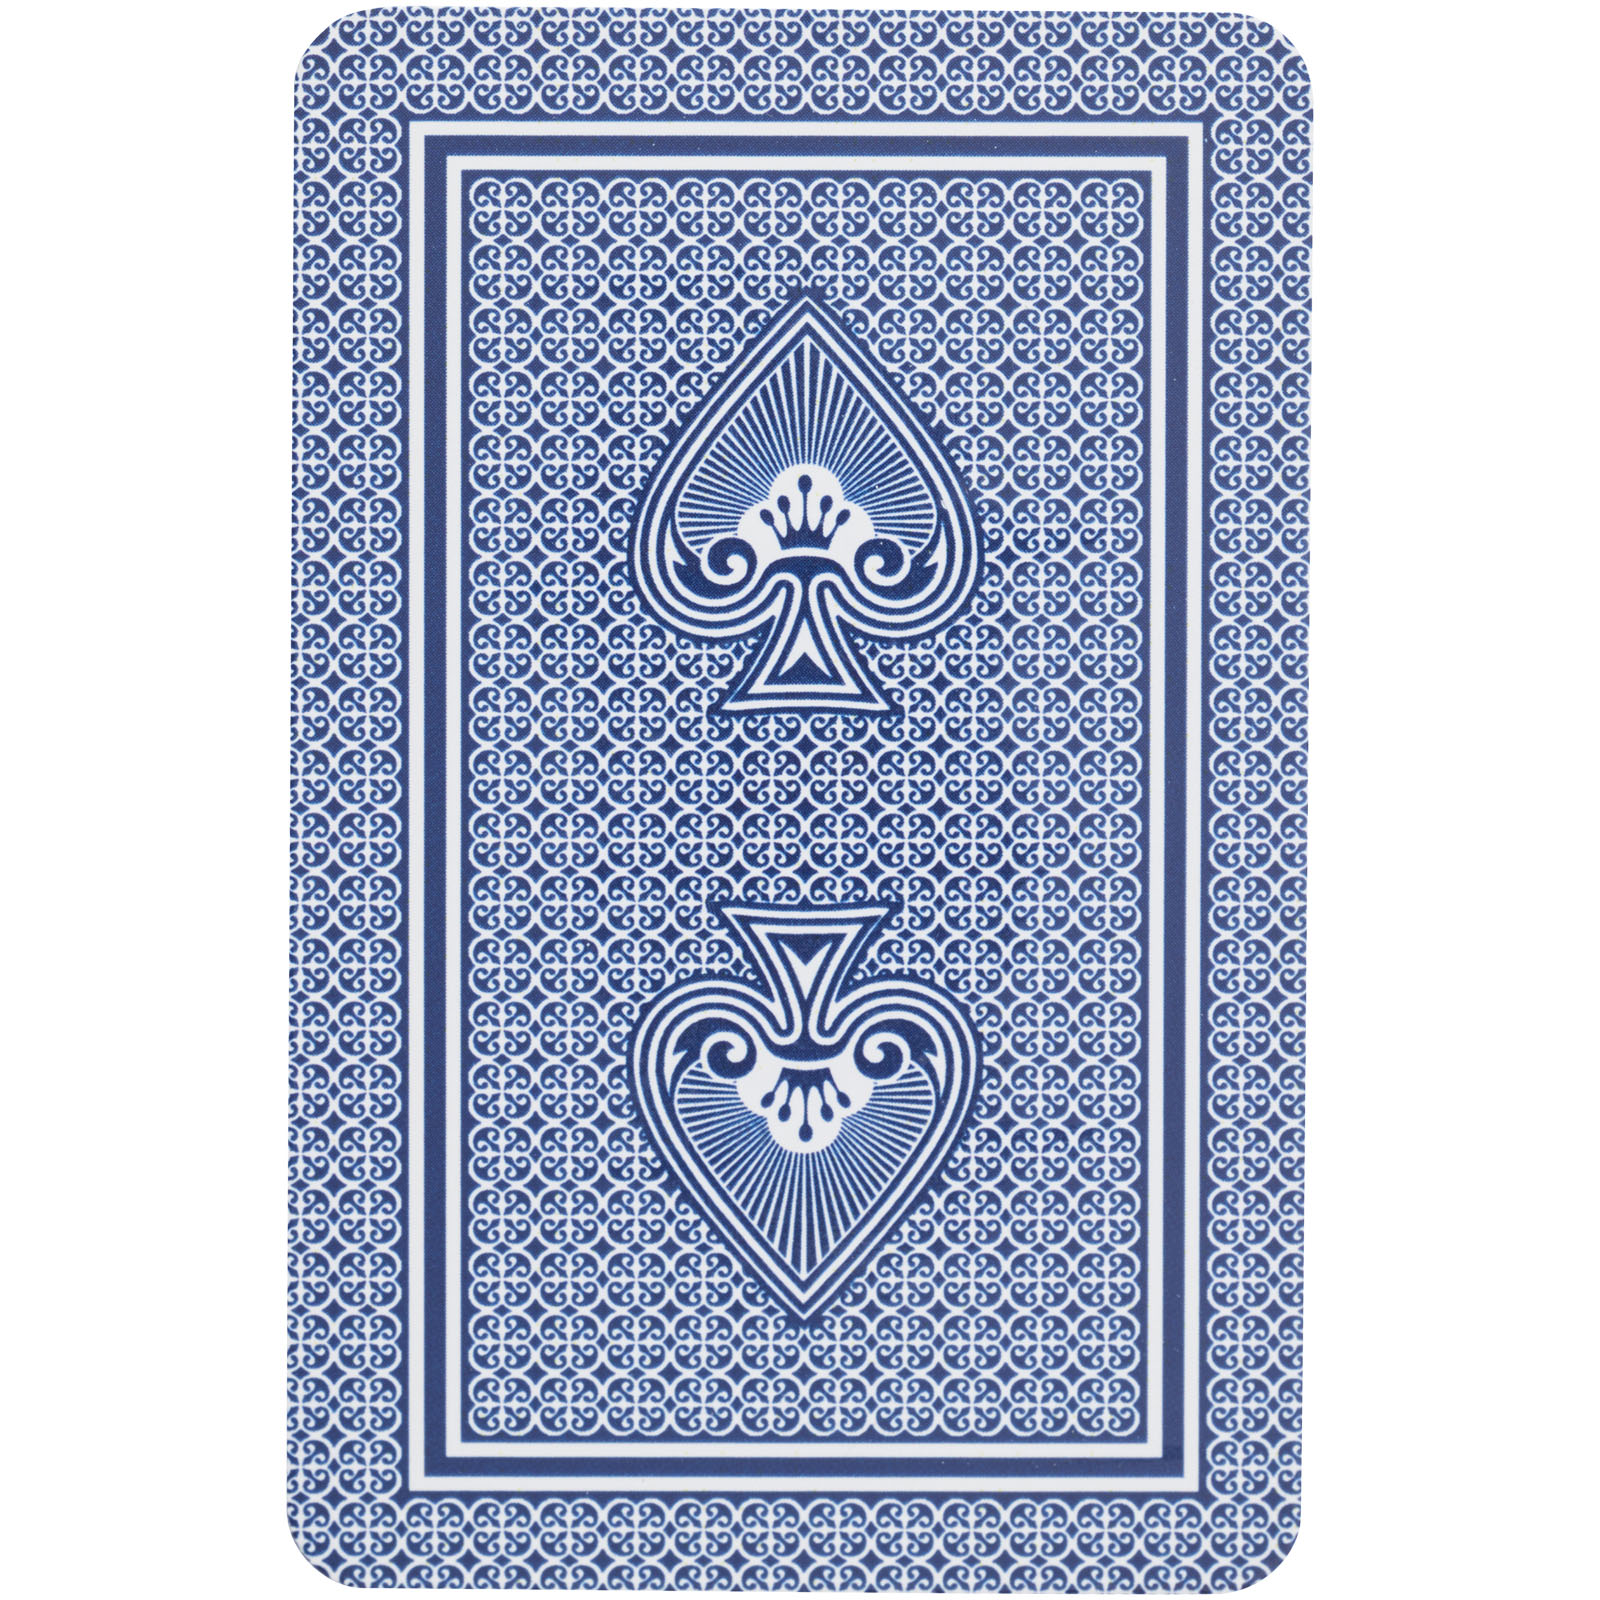 Jeux d'intérieur publicitaires - Ensemble de cartes à jouer Ace - 2